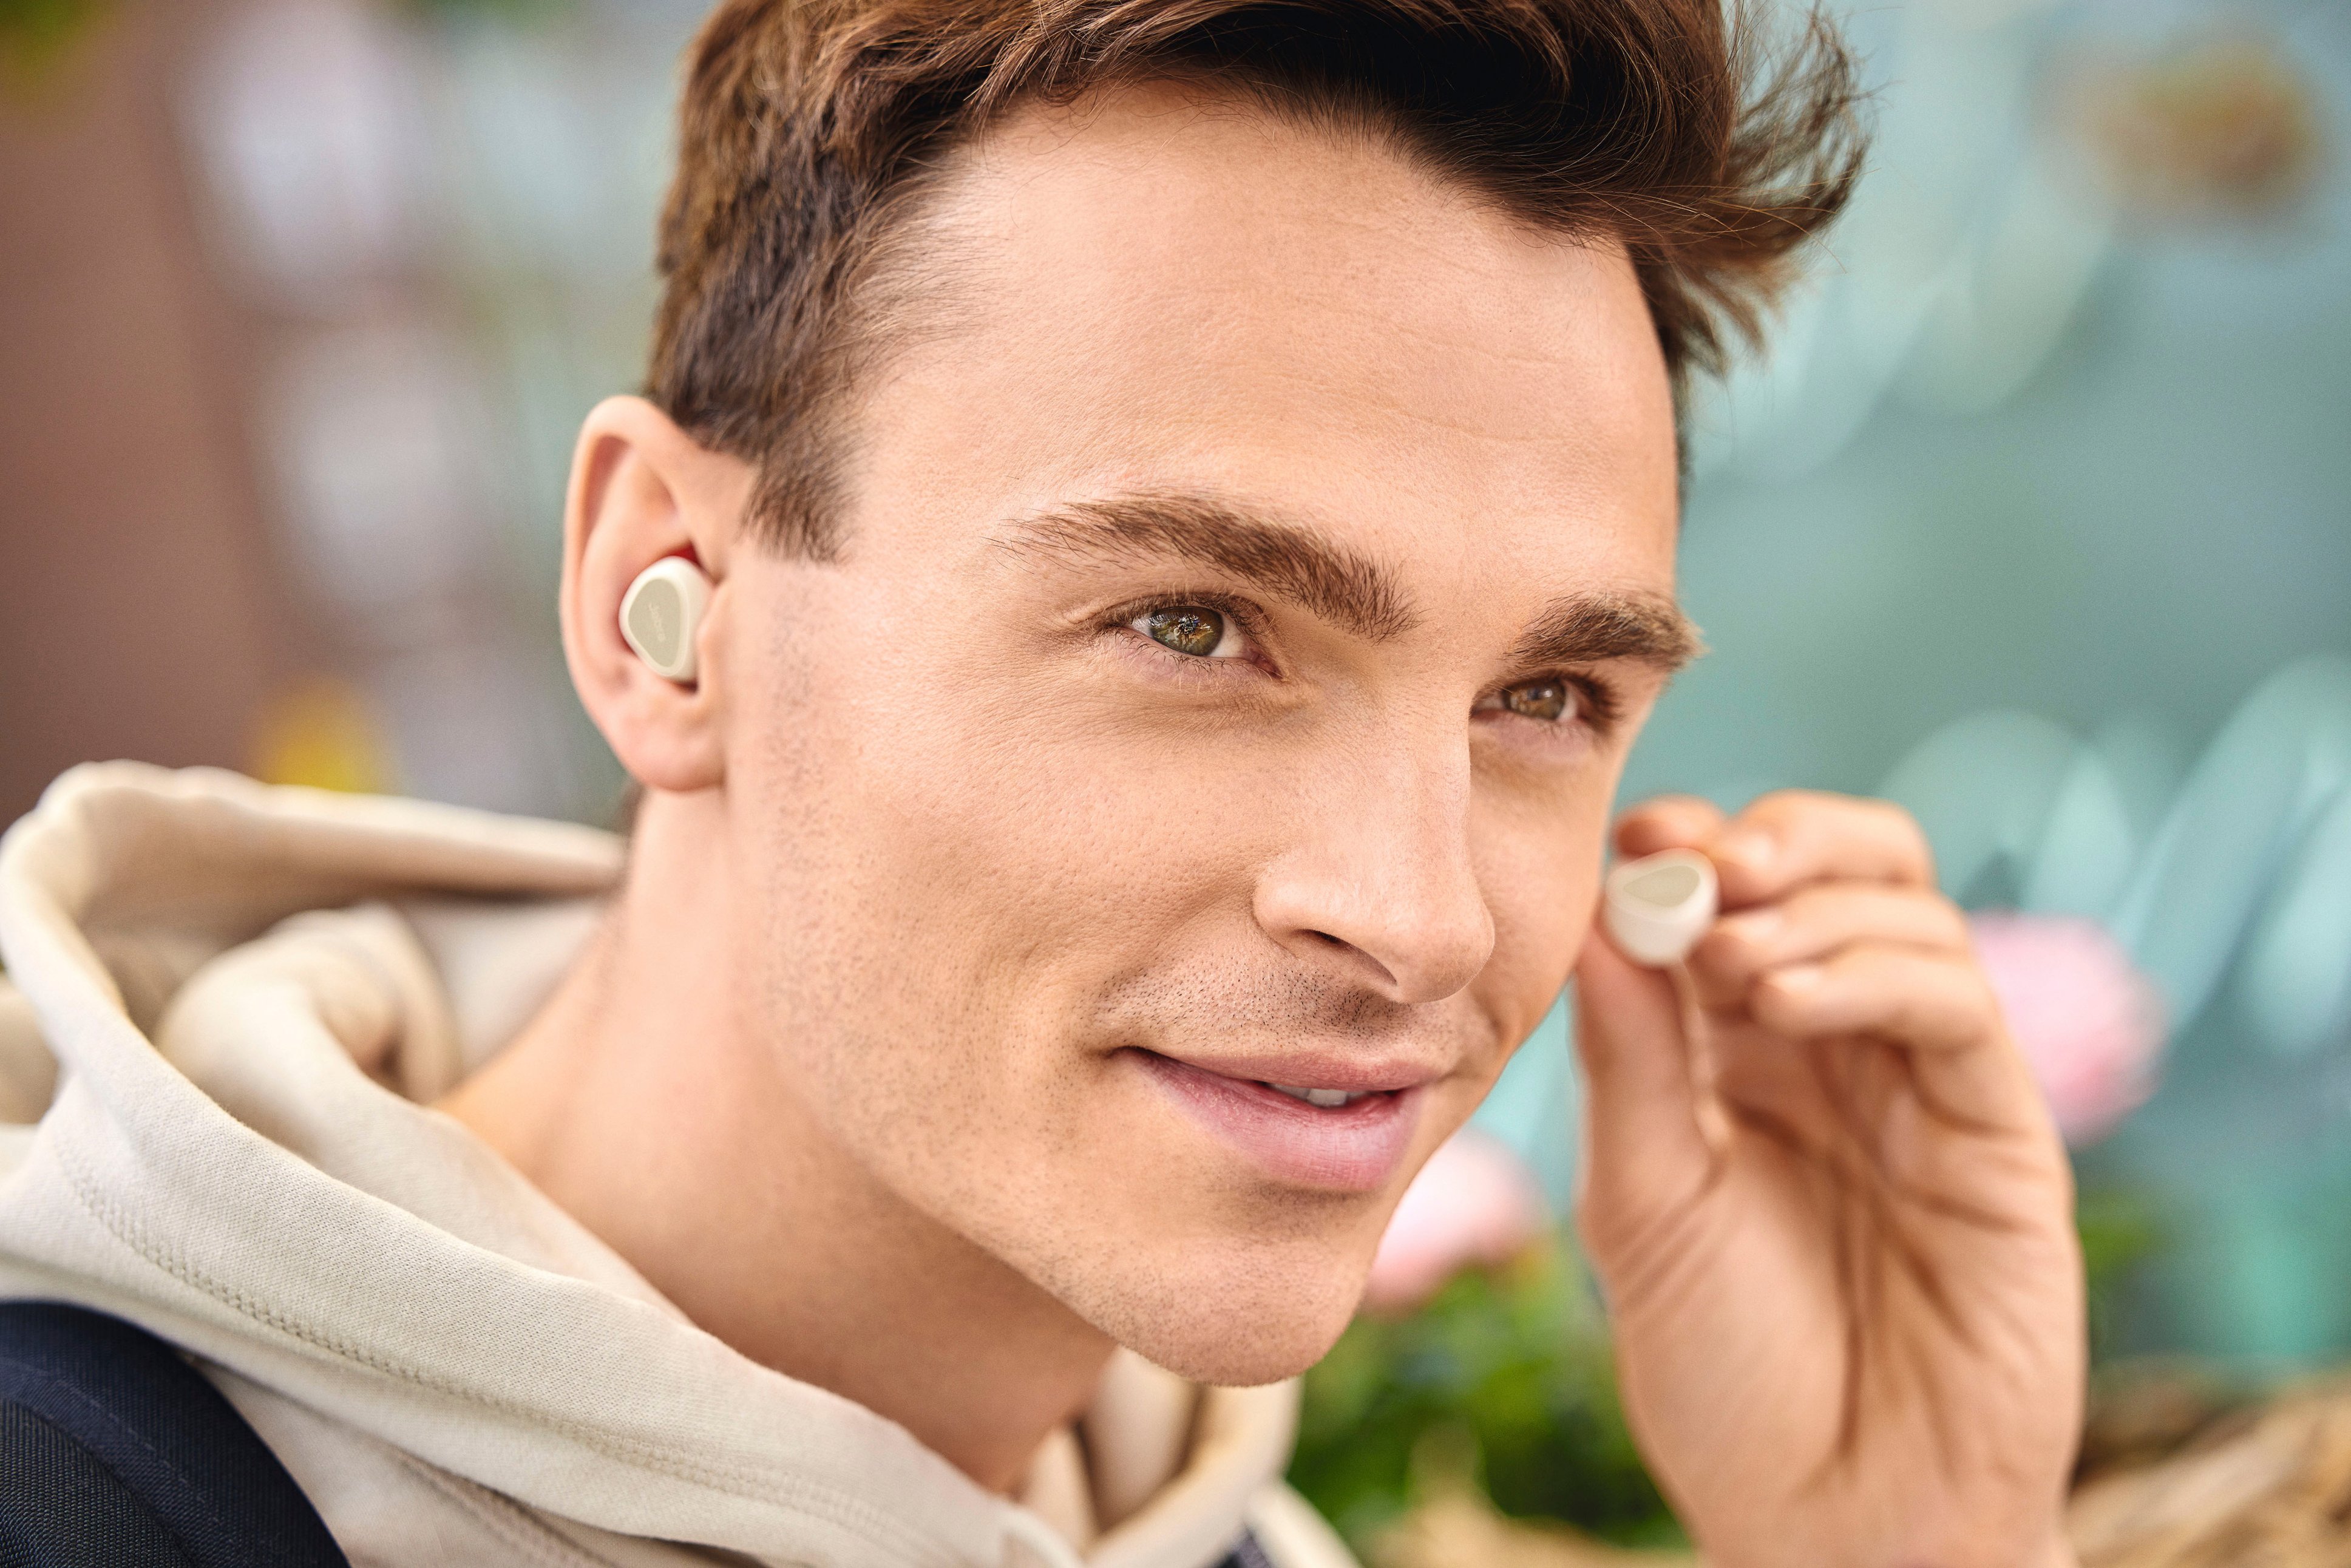 Jabra Elite 3 True Wireless In-Ear Headphones Lilac 100-91410002-02 - Best  Buy